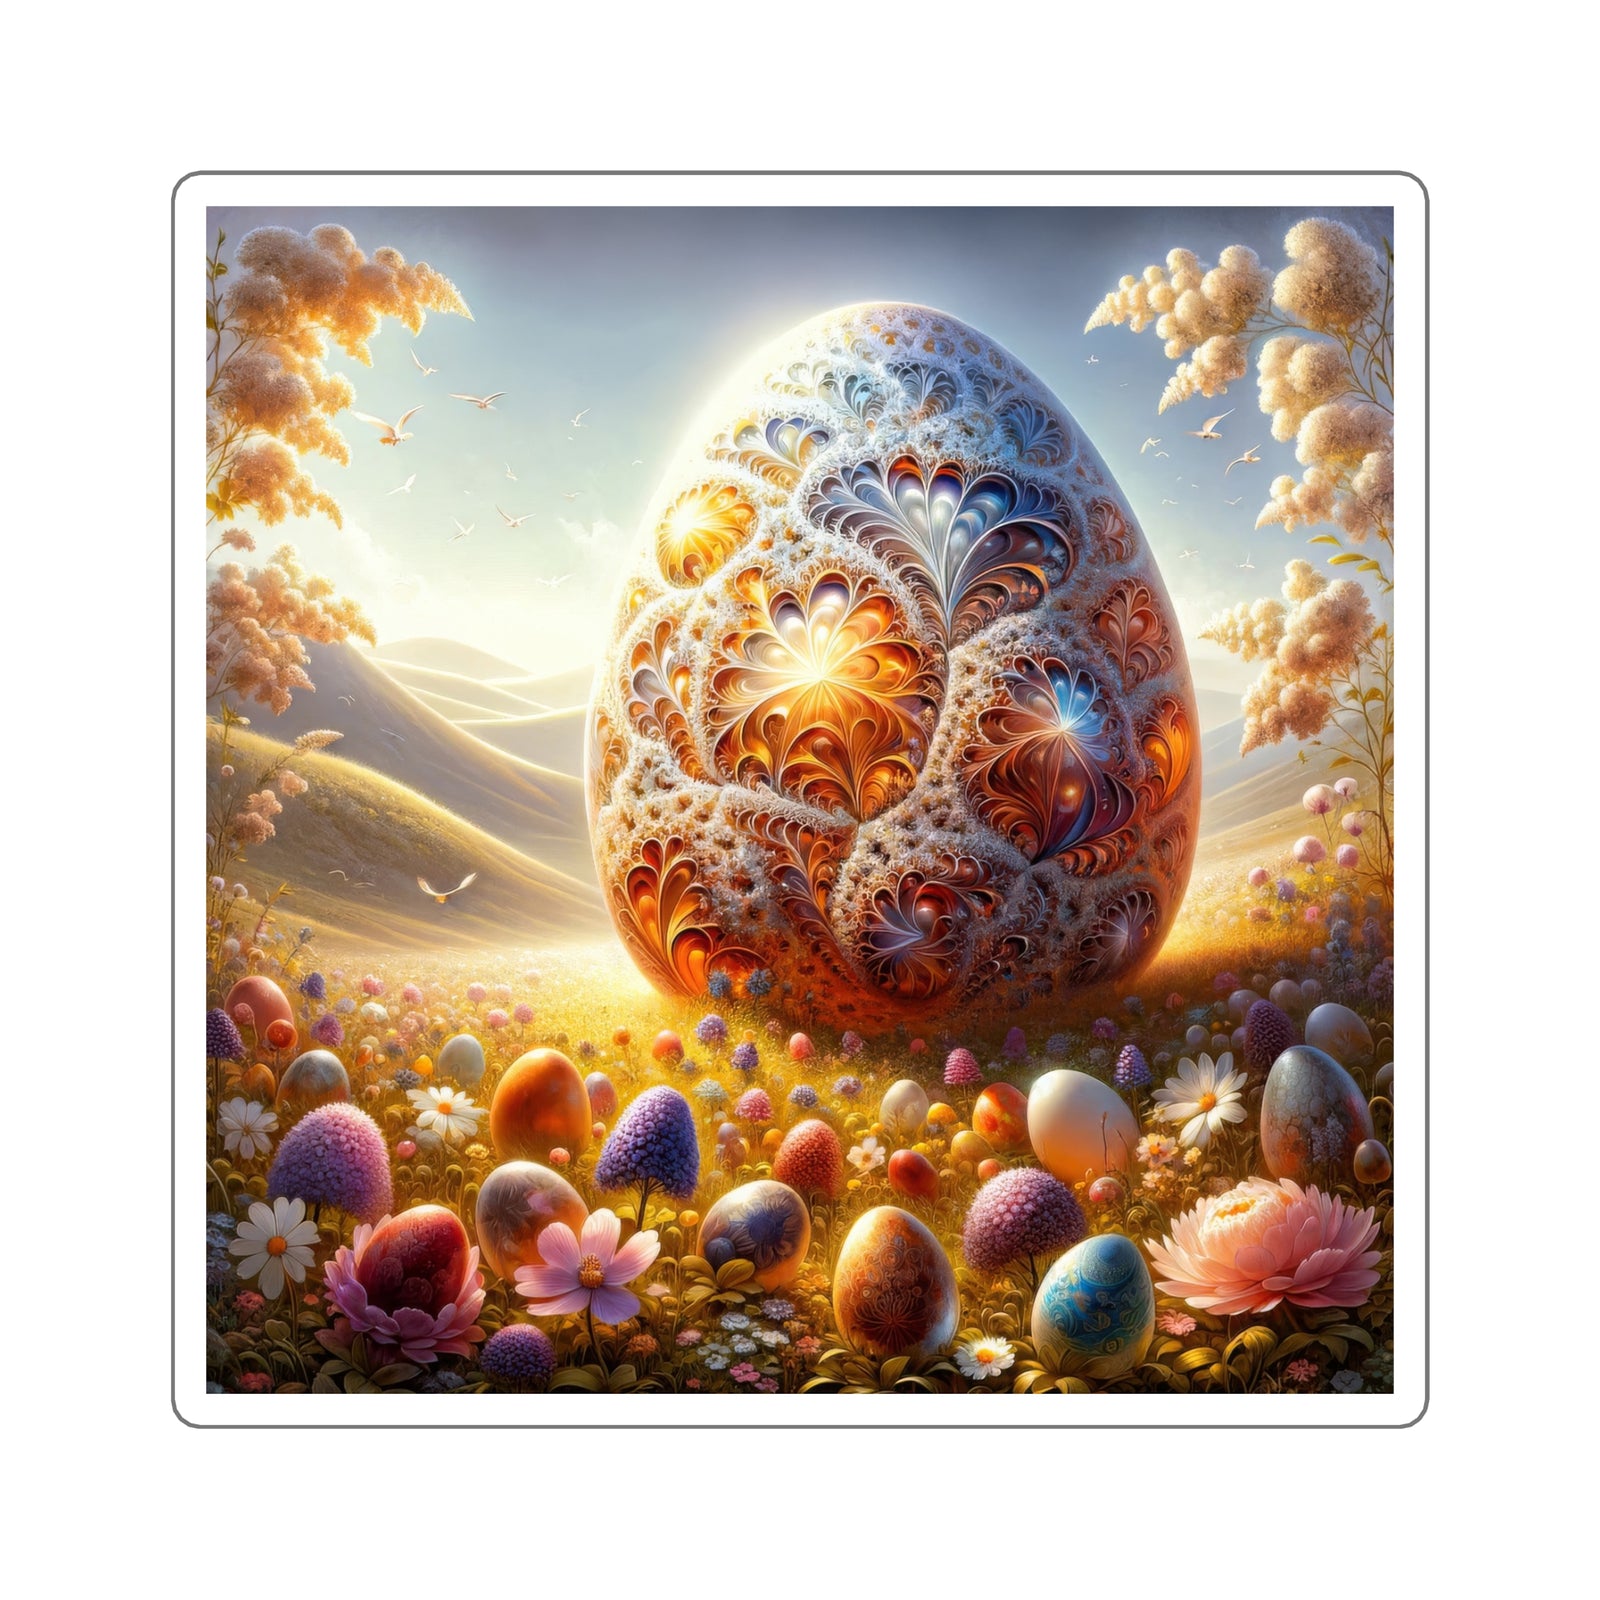 El huevo opulento: pegatinas artísticas del corazón de la naturaleza